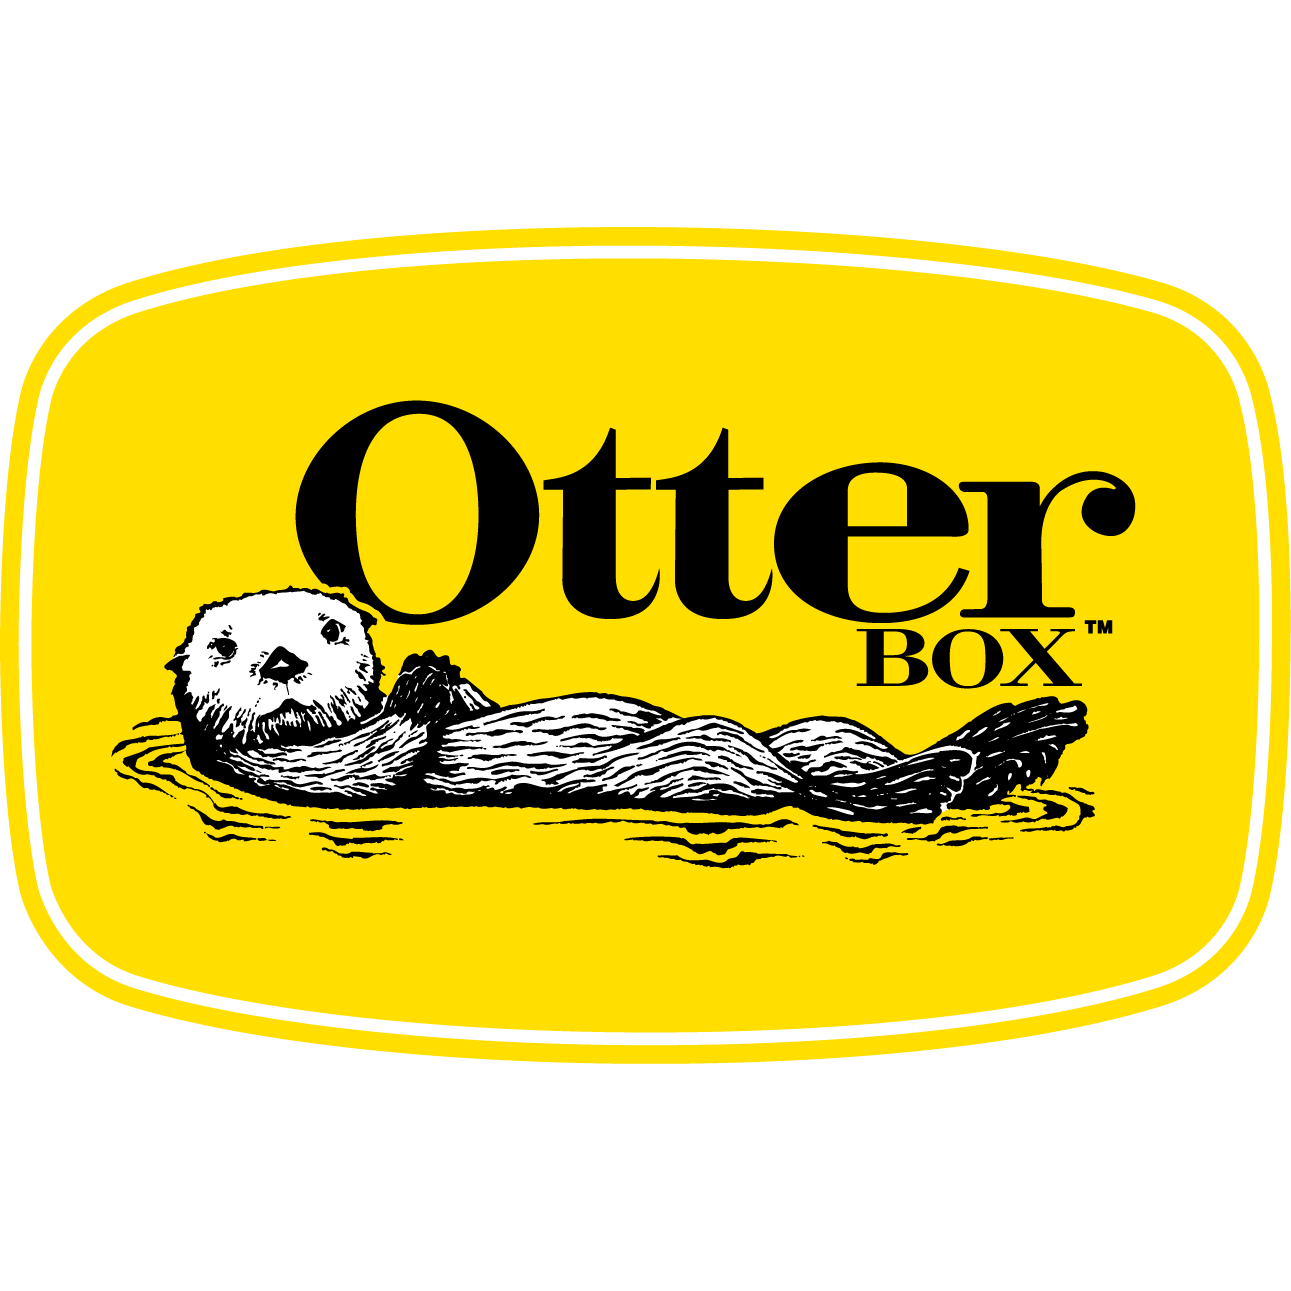 Otterbox - the Future Store